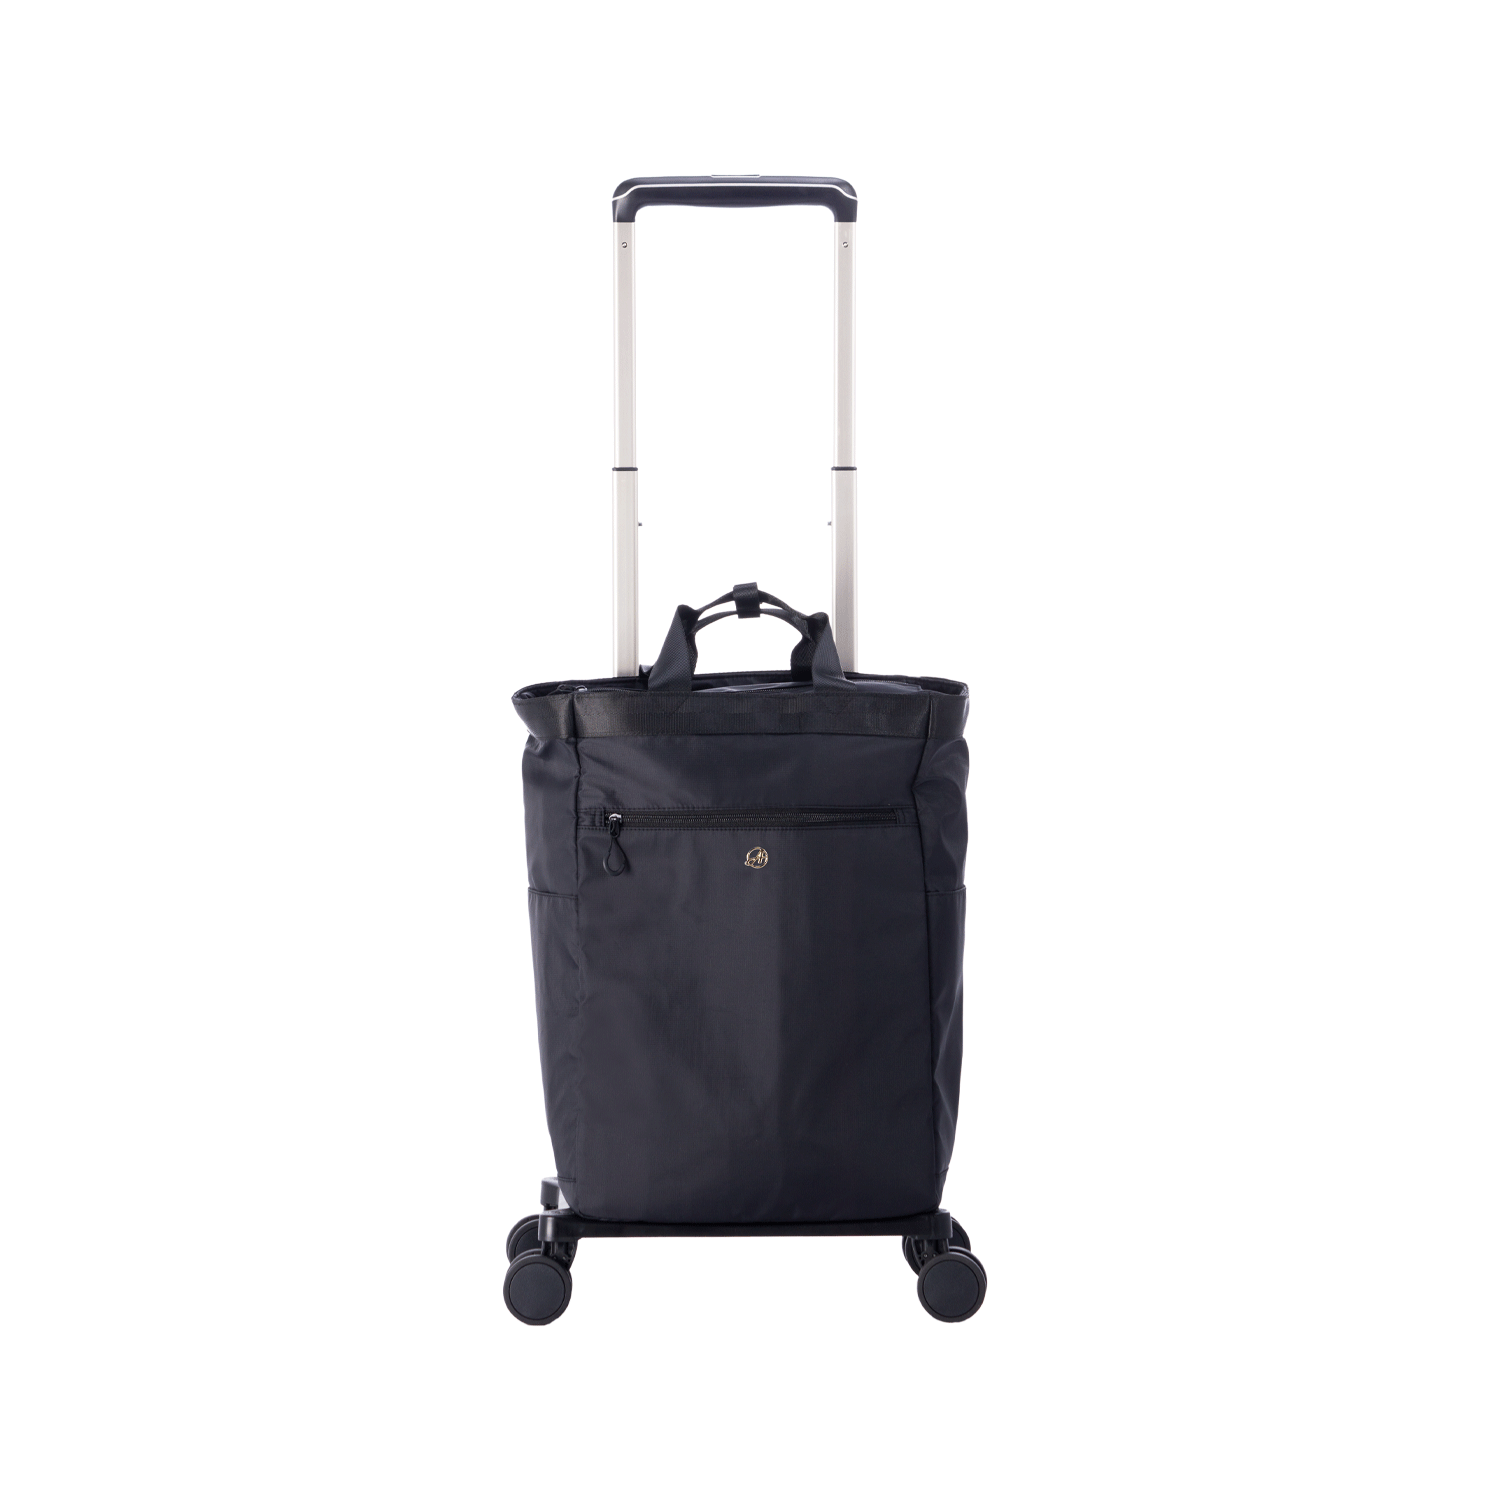 撥水&保冷&安定走行!! スーツケースメーカーが本気で作った、快適に使用できるお買い物キャリー AS-1380